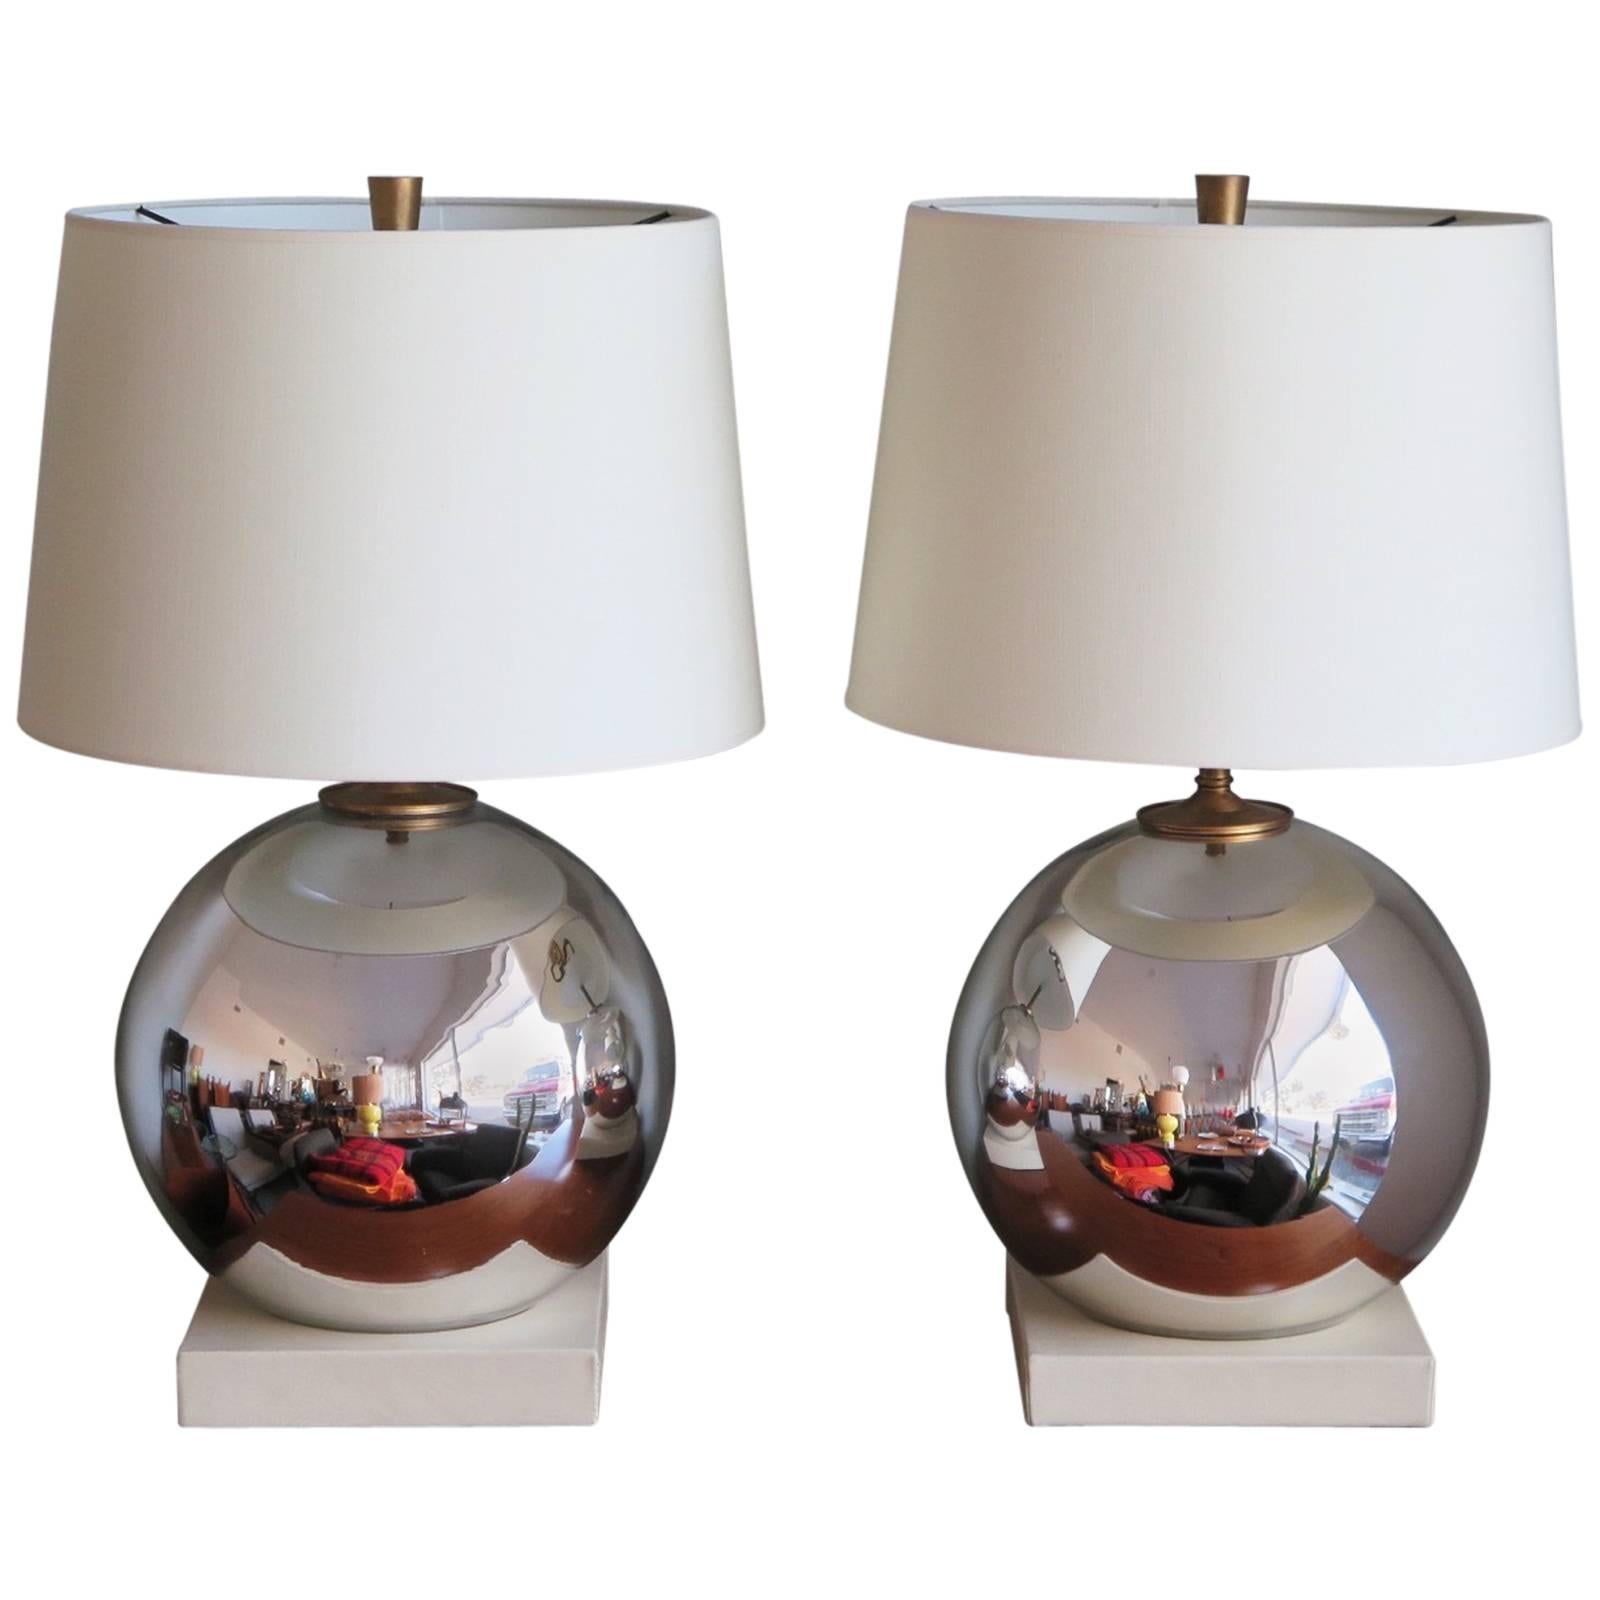 Pair of Elegant Mercury Lamp Ball Lamps